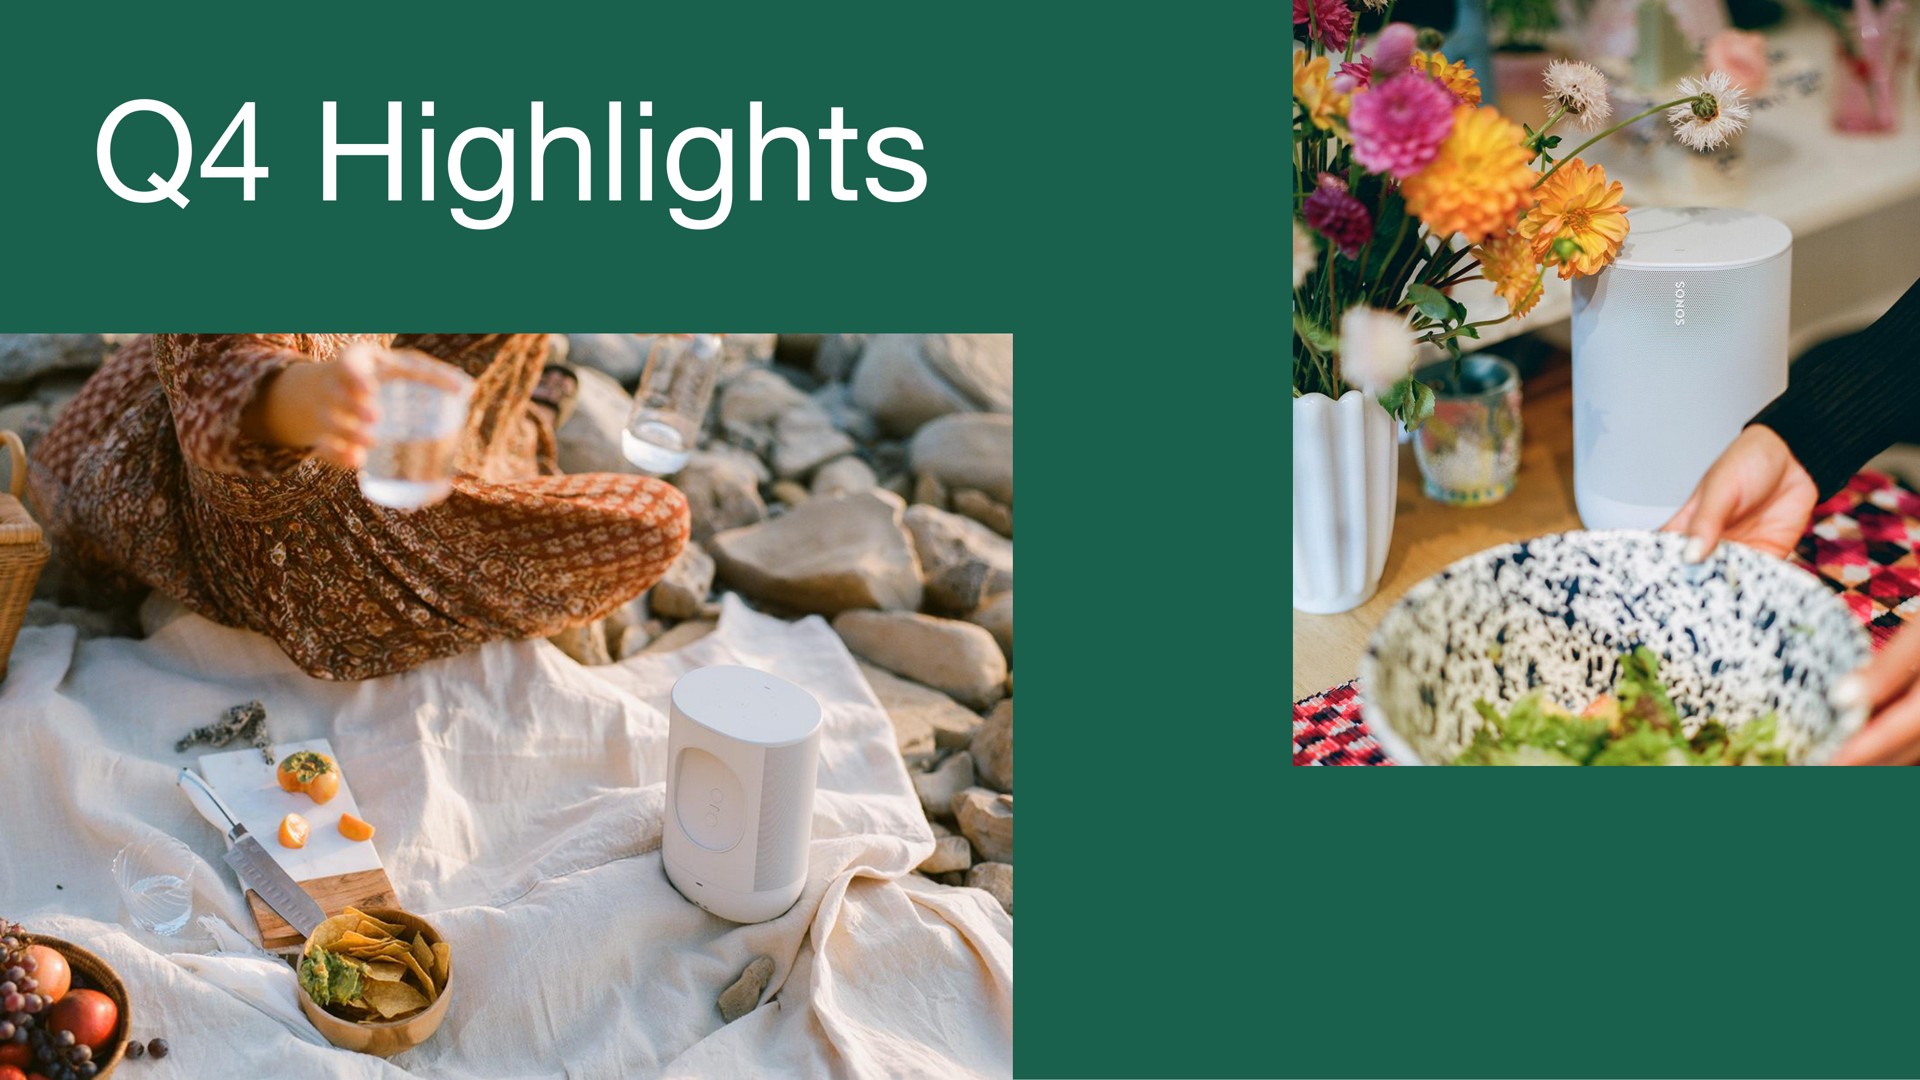 highlights | Sonos